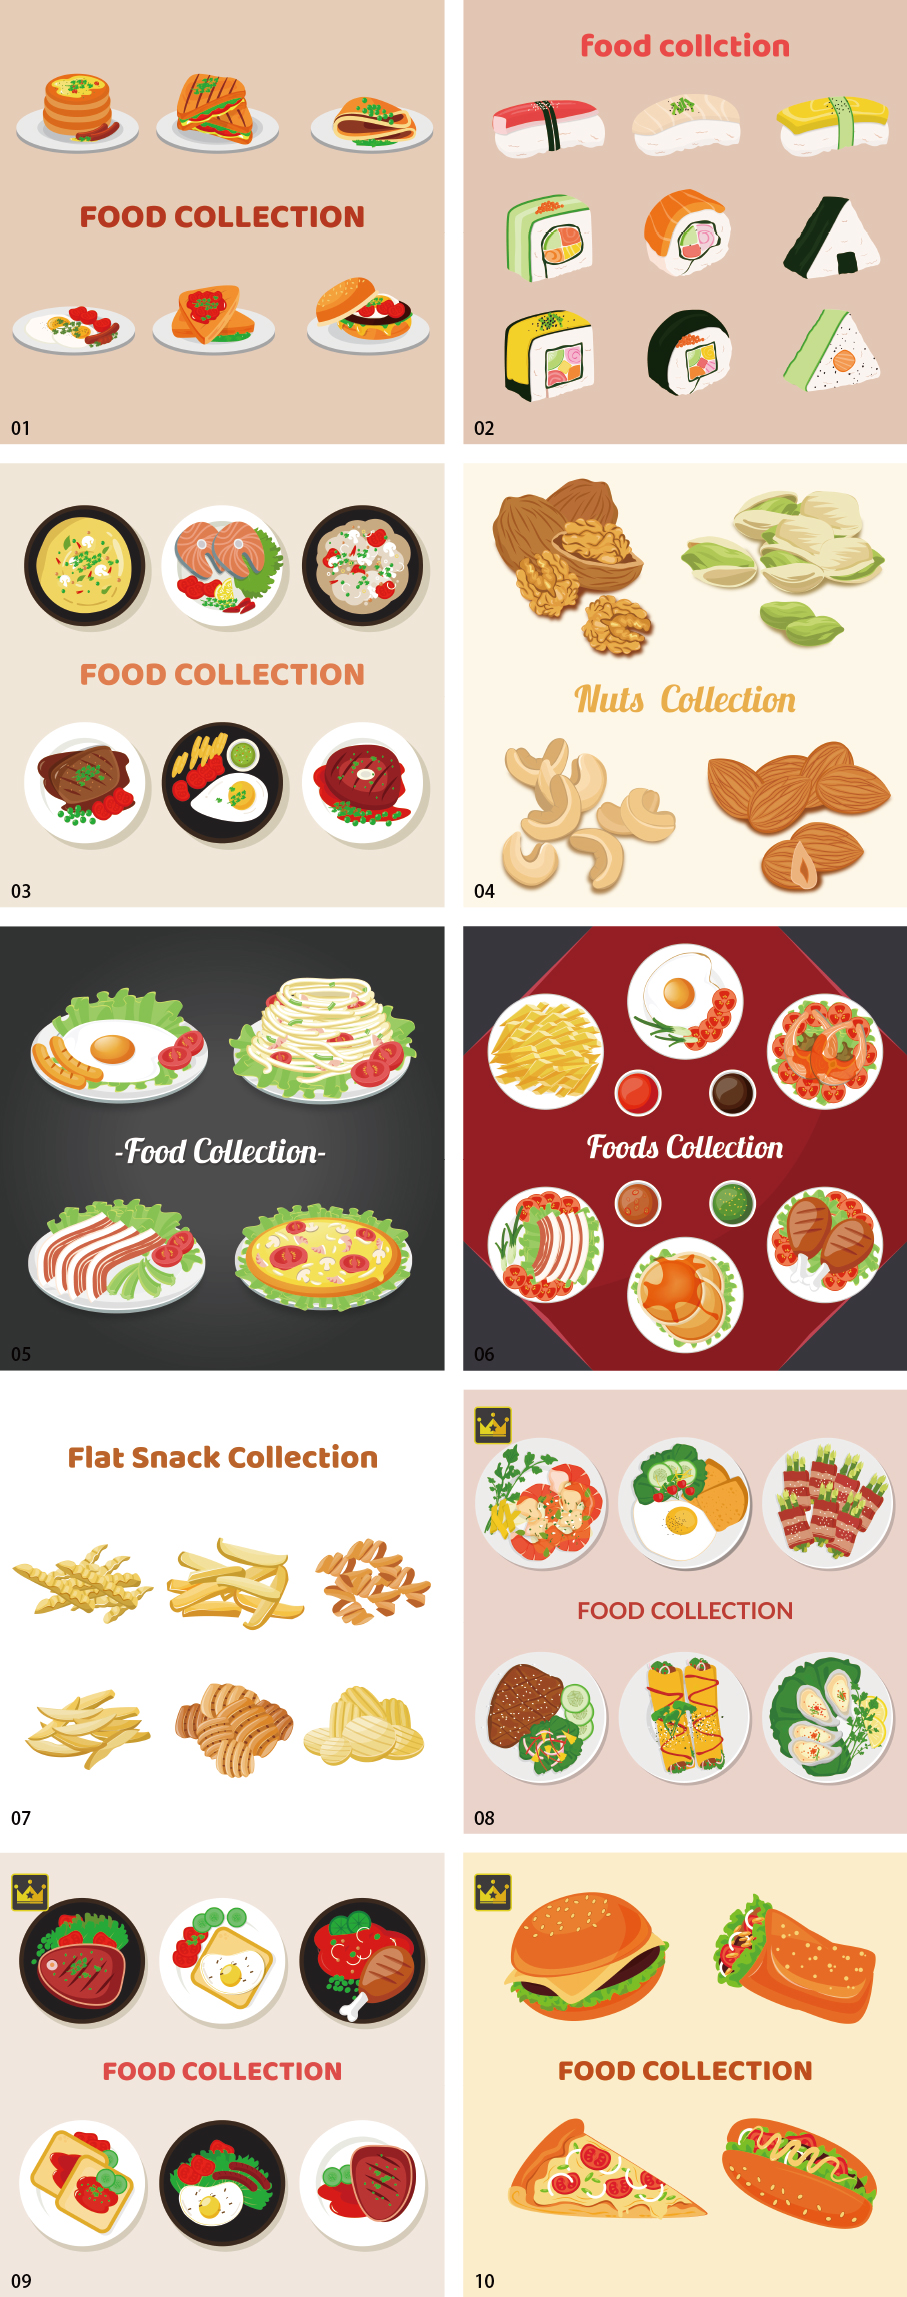 Bộ sưu tập minh họa thực phẩm tập 2